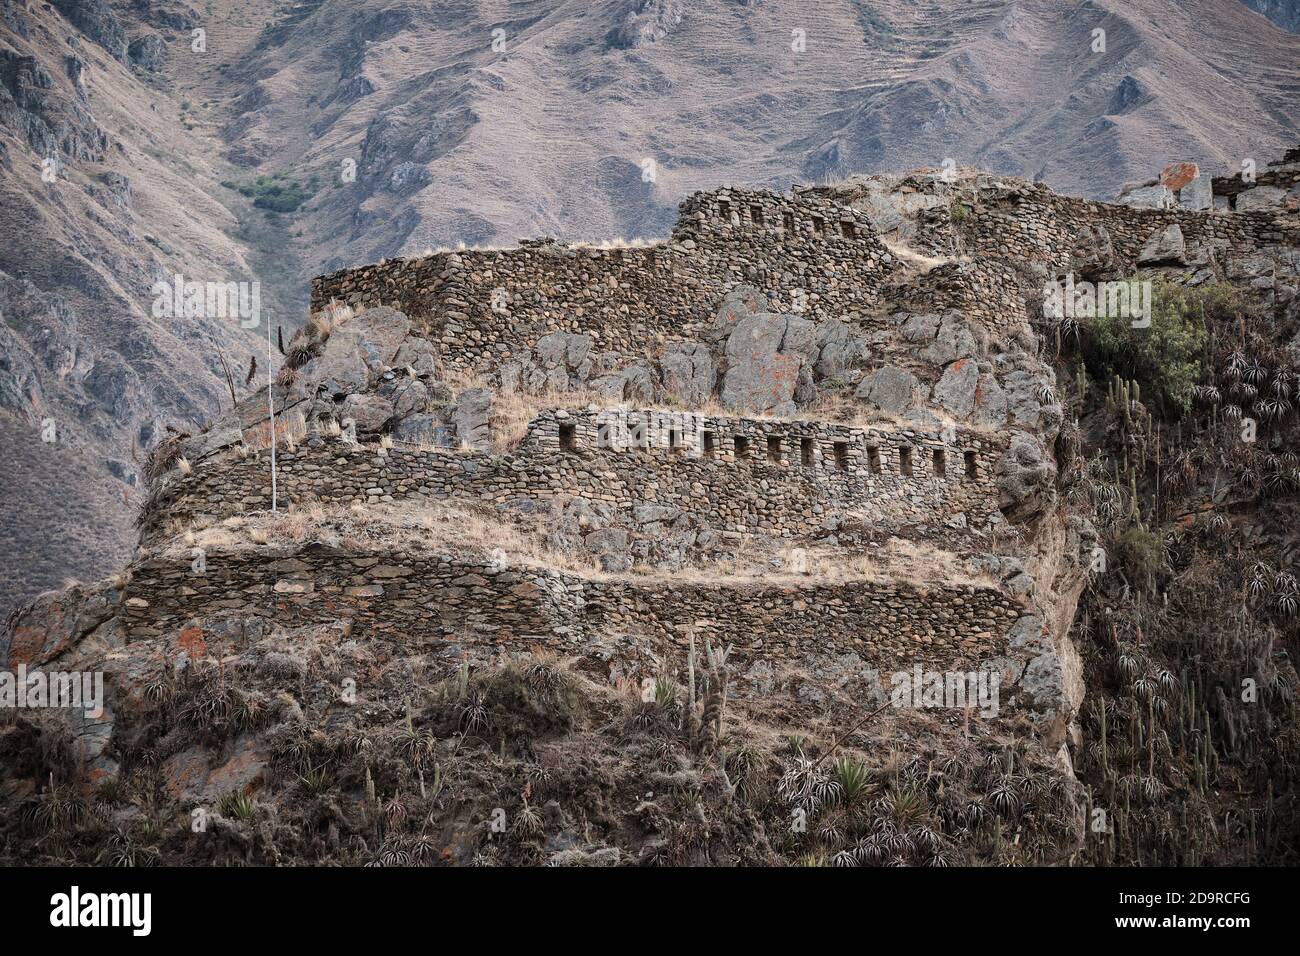 The Incan ruins at Ollantaytambo, Peru Stock Photo